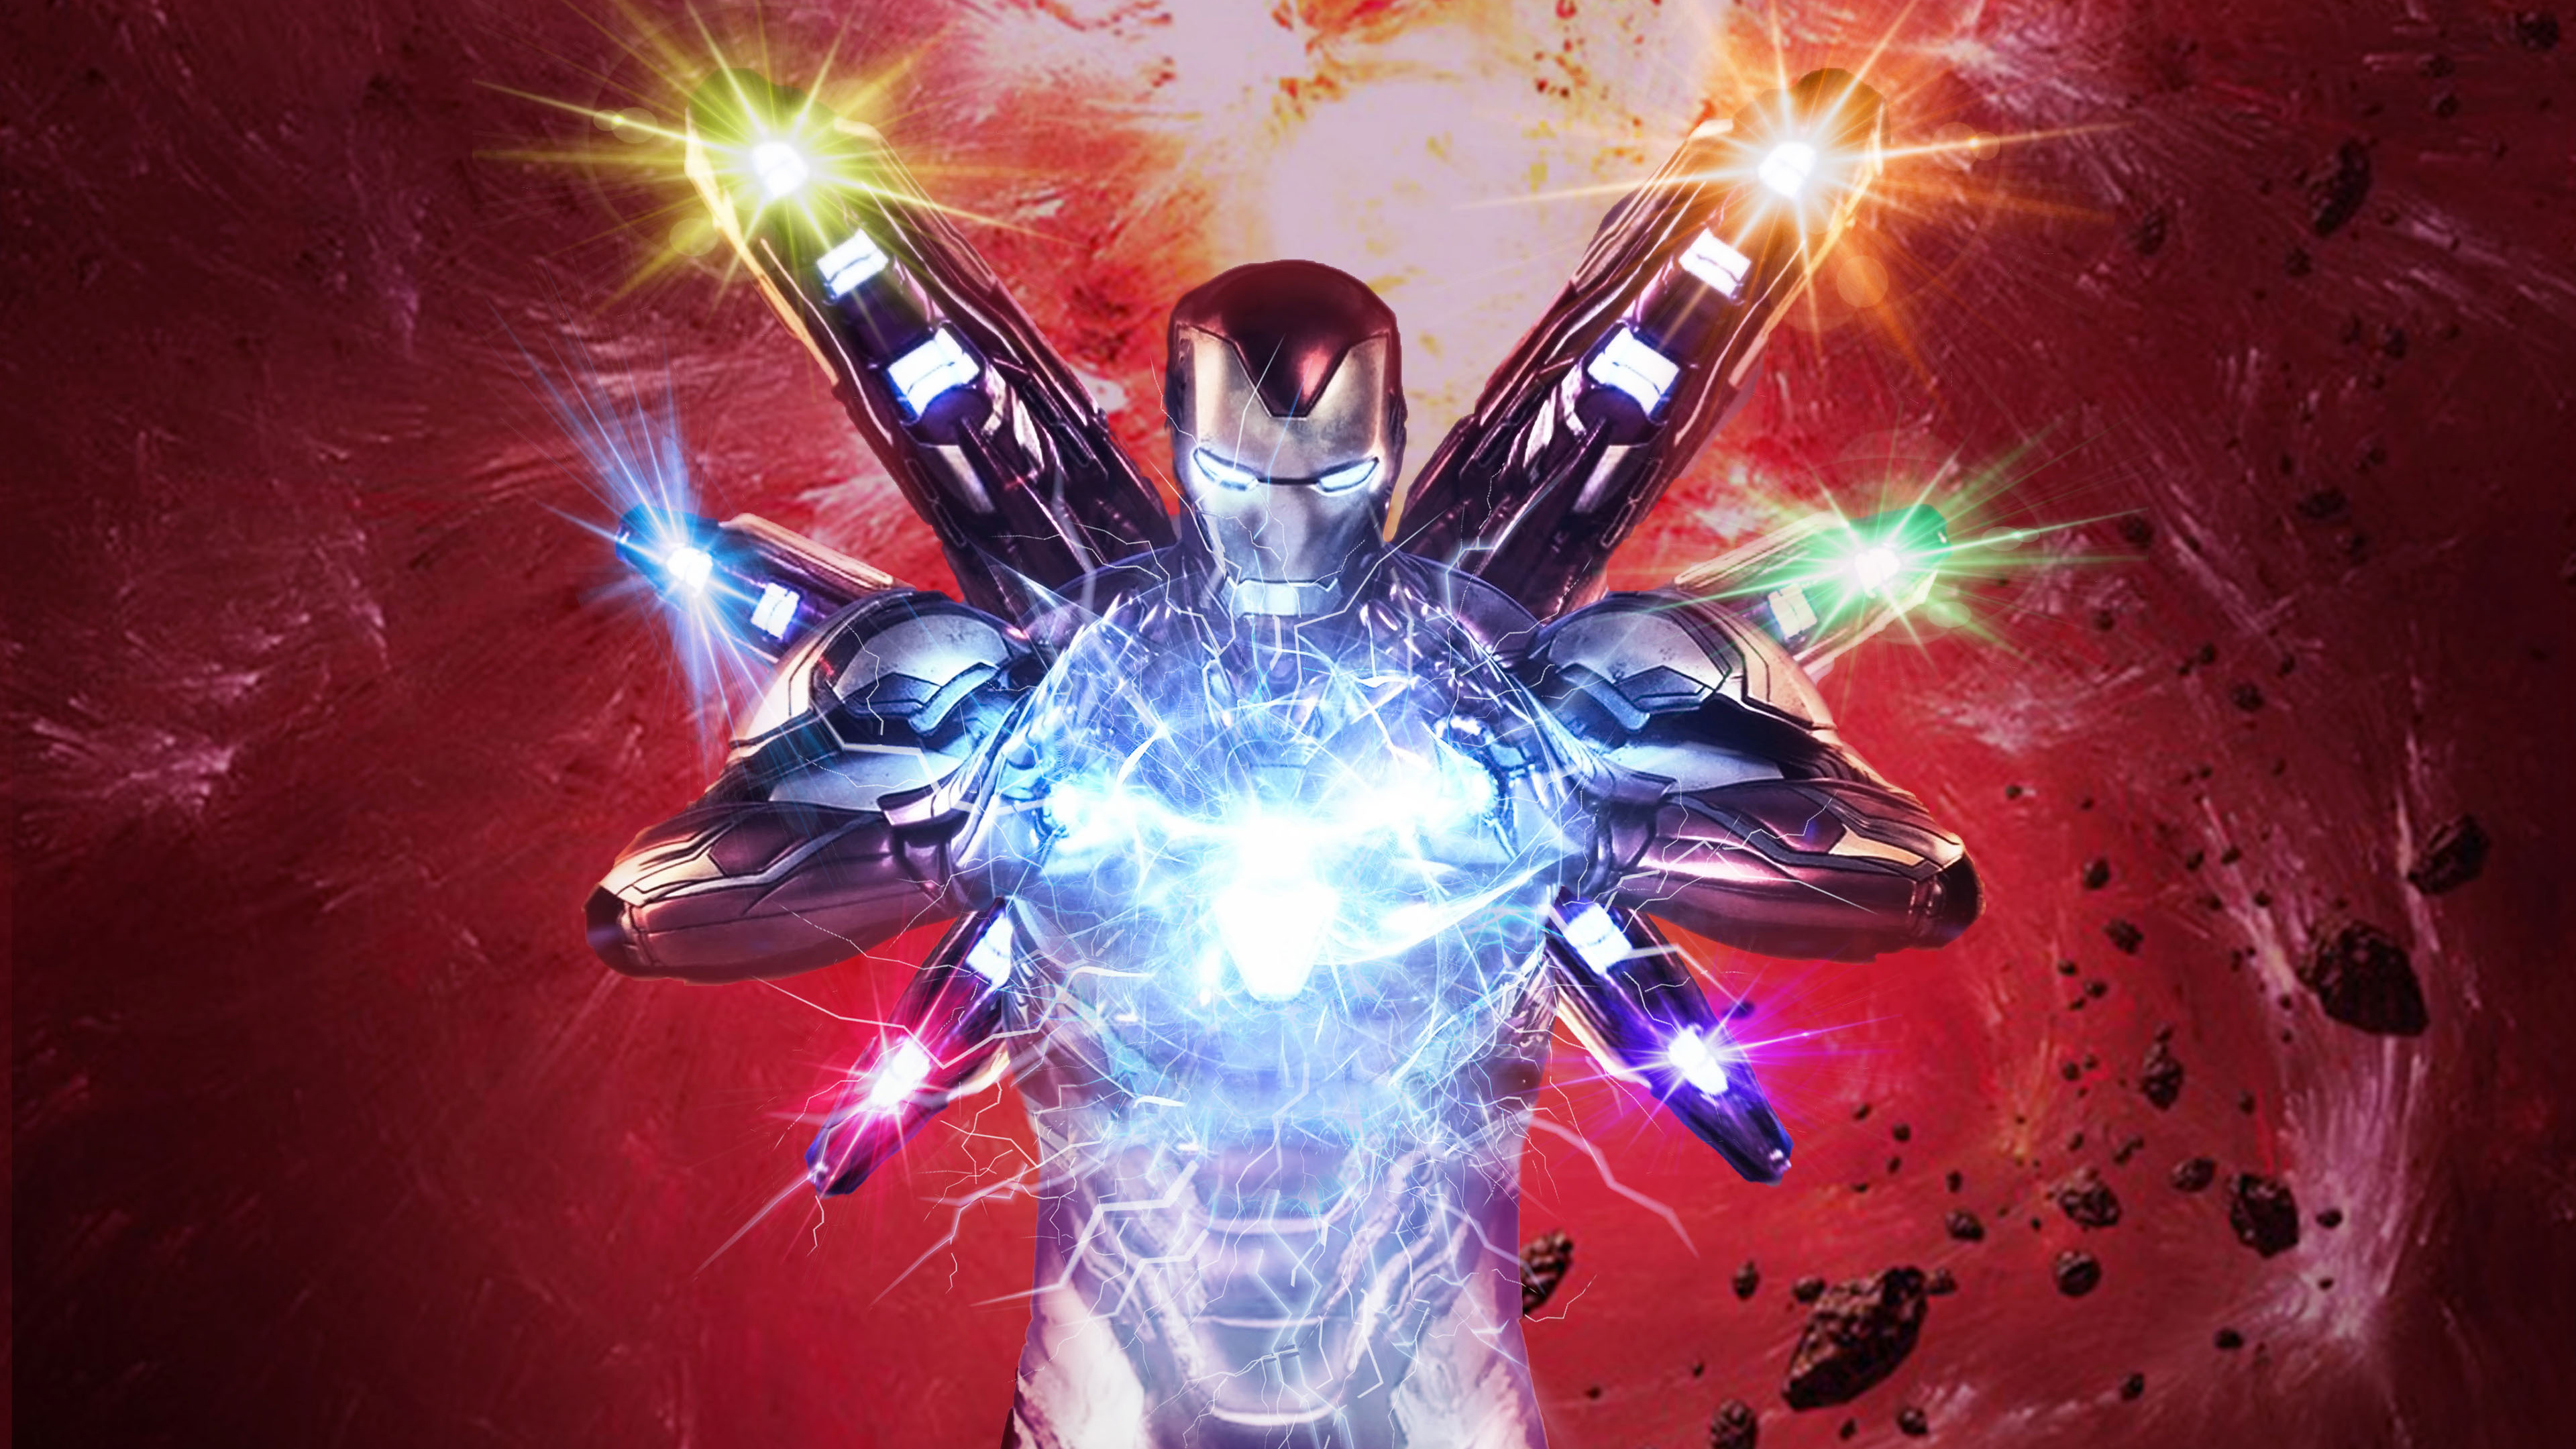 Free download wallpaper Iron Man, Avengers, Movie, Tony Stark, The Avengers, Avengers Endgame on your PC desktop